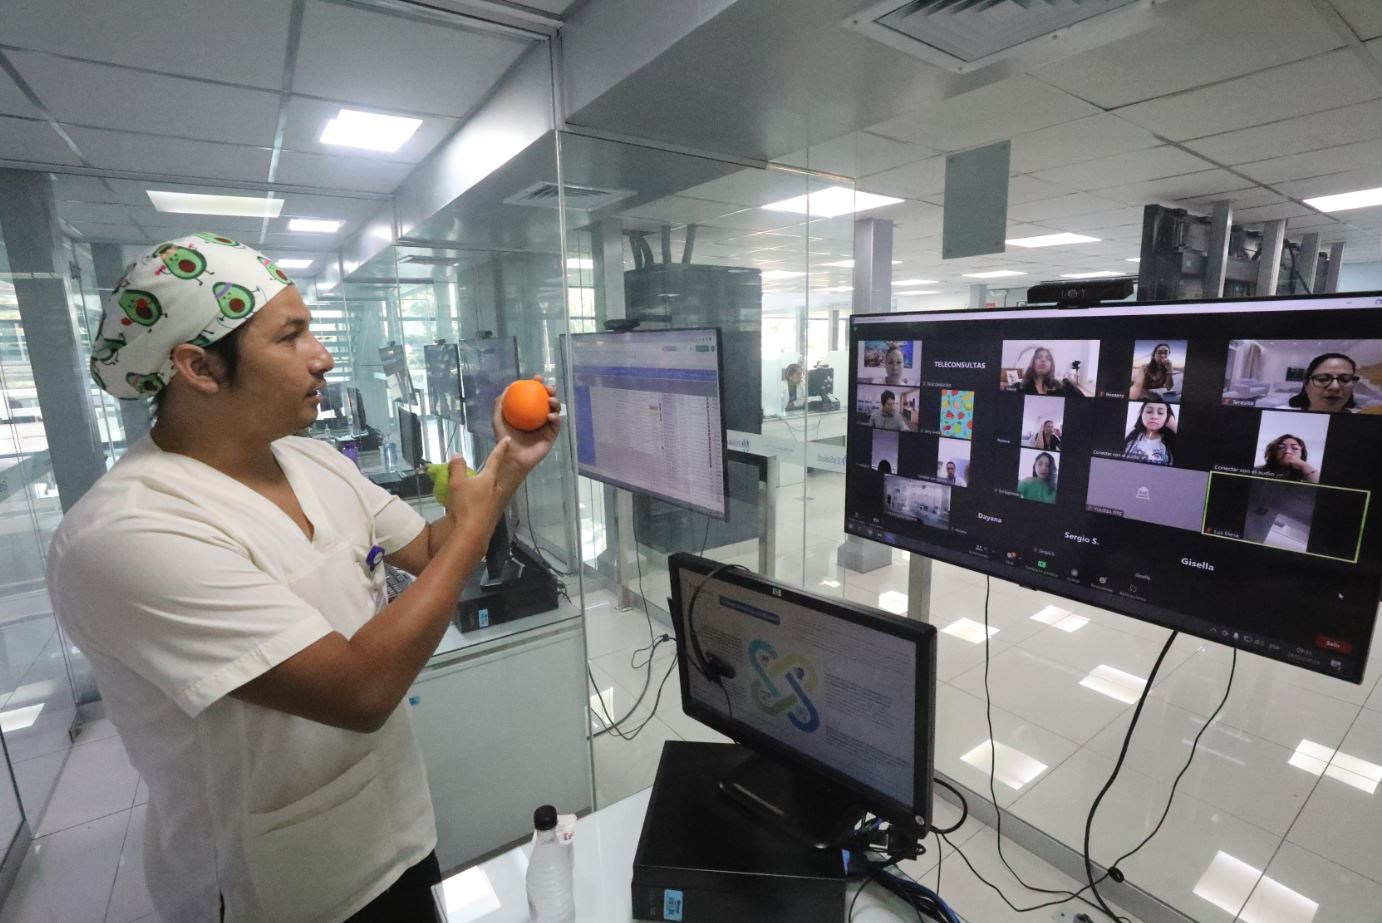 EsSalud: Centro Nacional de Telemedicina lanza programa virtual “Seguros y felices al cole”